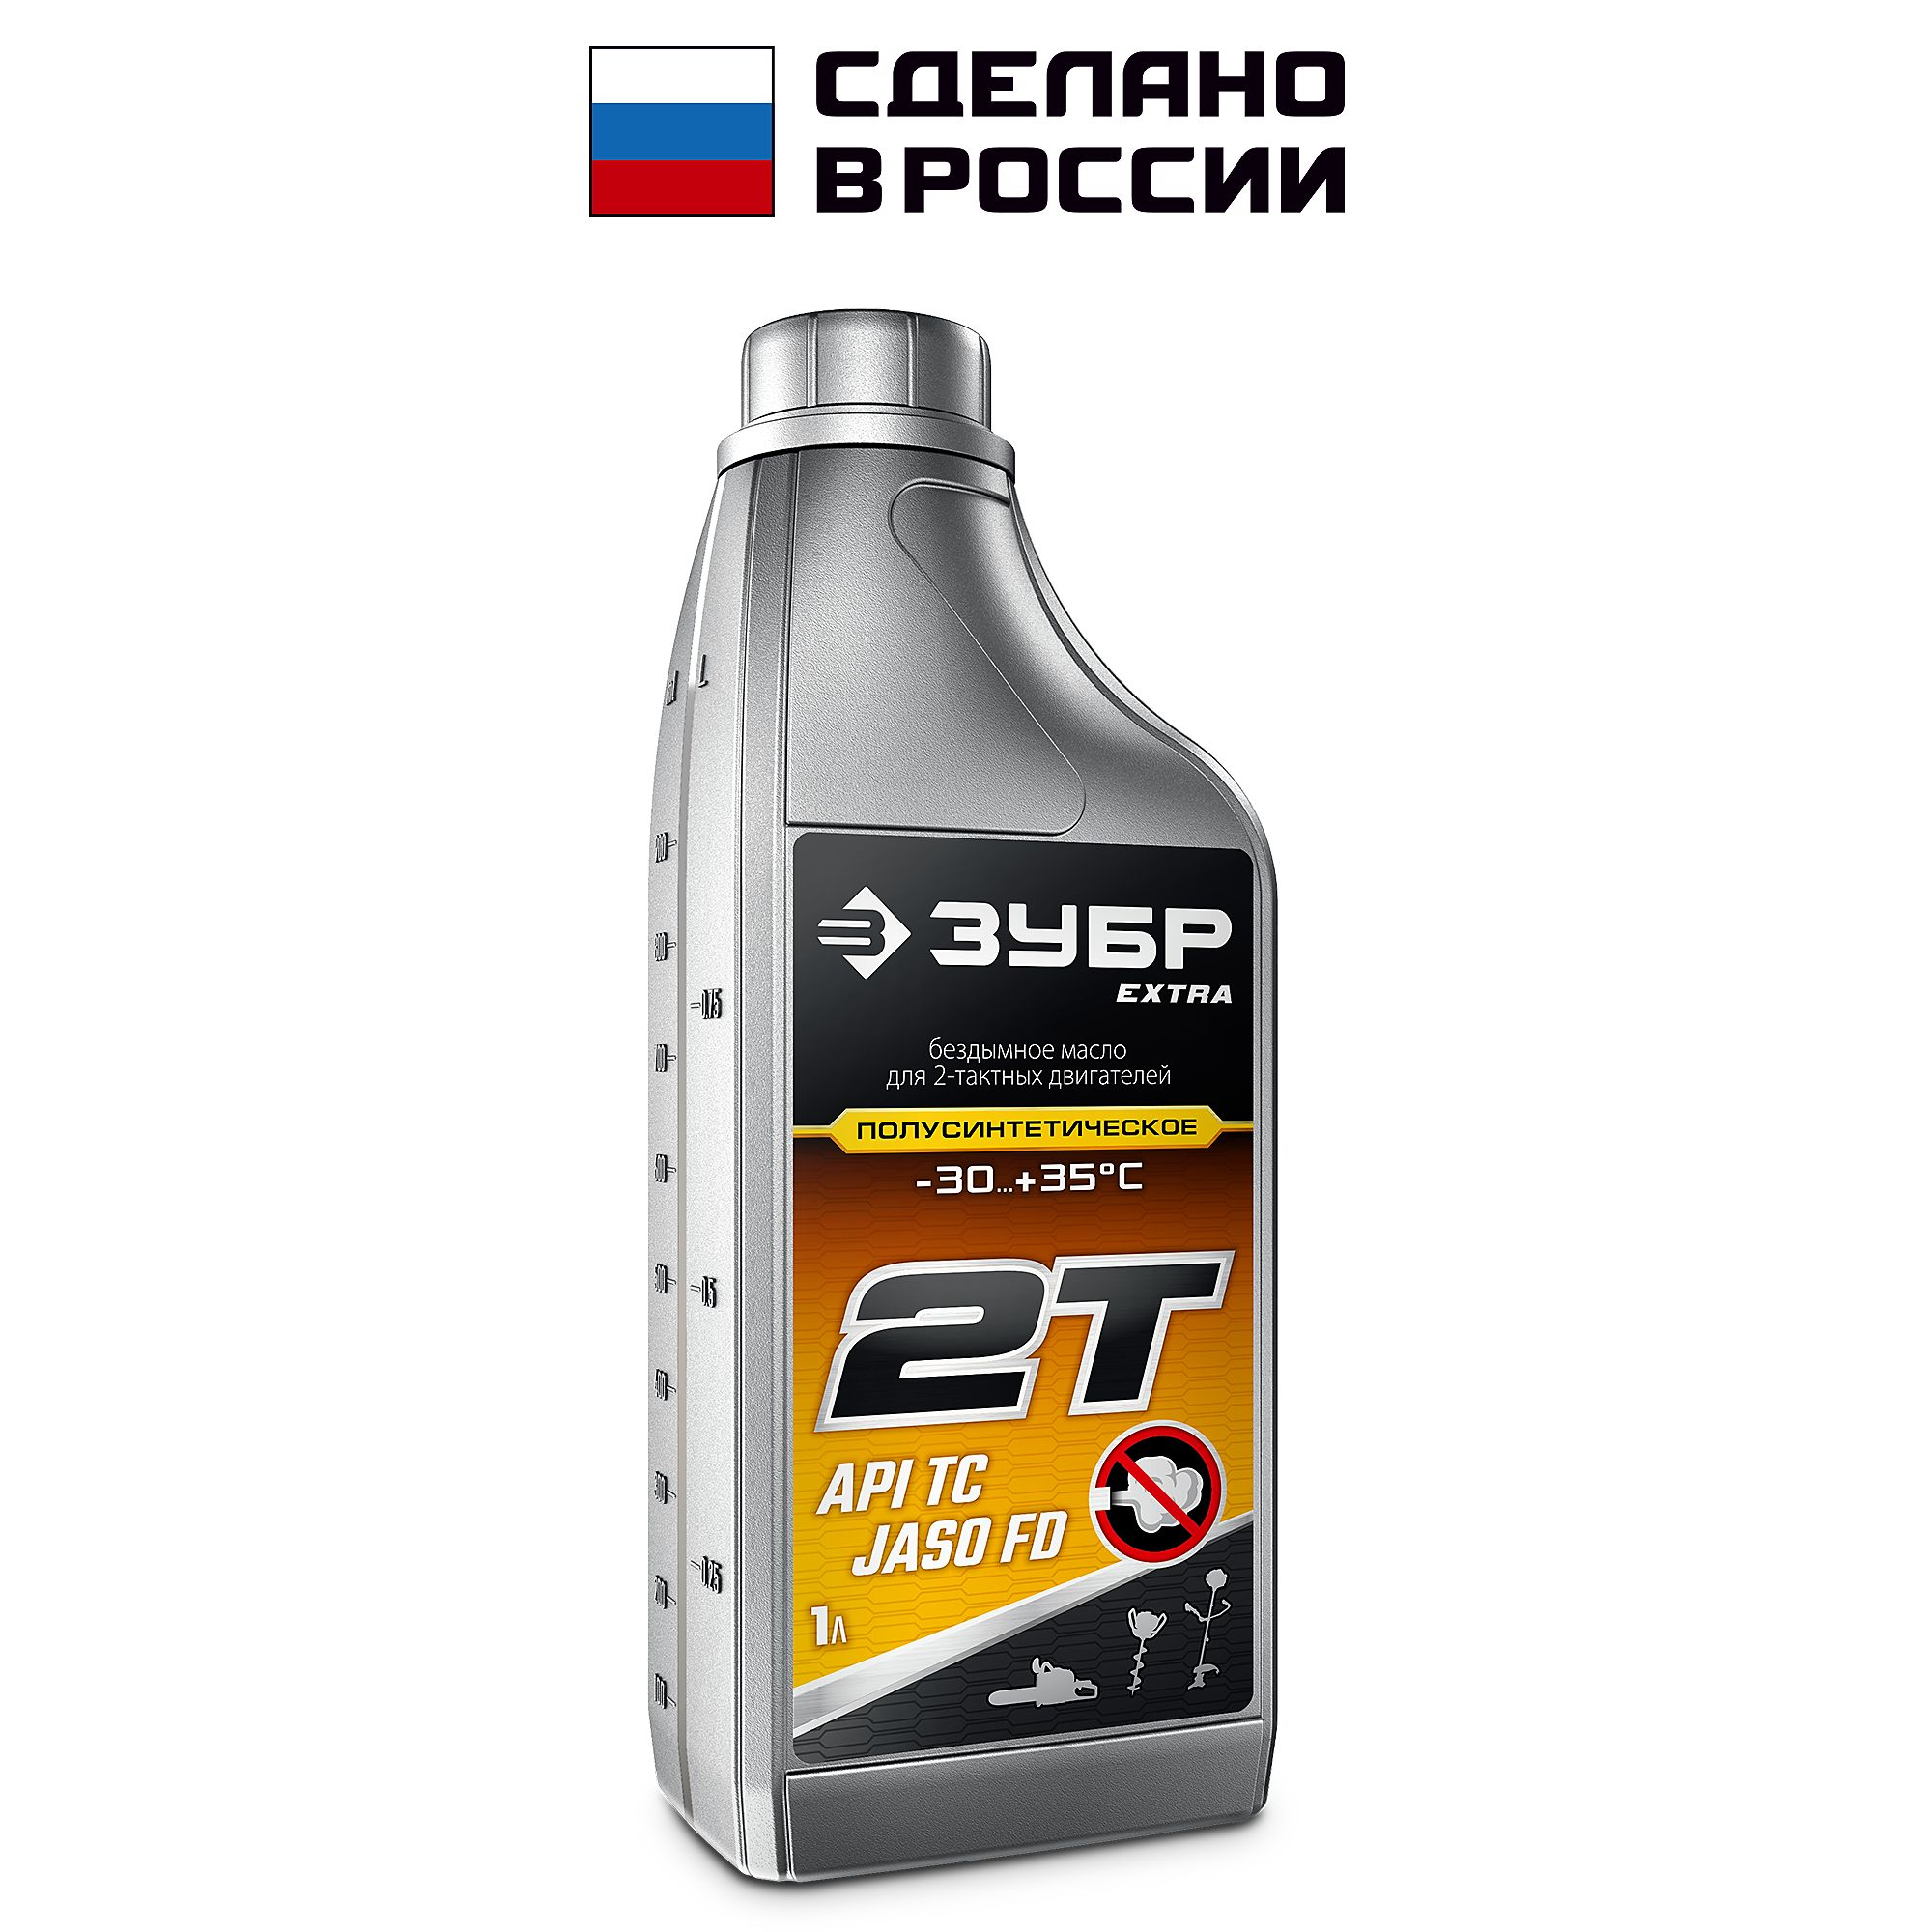 ЗУБР 2Т-П, 1 л, полусинтетическое масло для 2-тактных двигателей, EXTRA (70601-1)